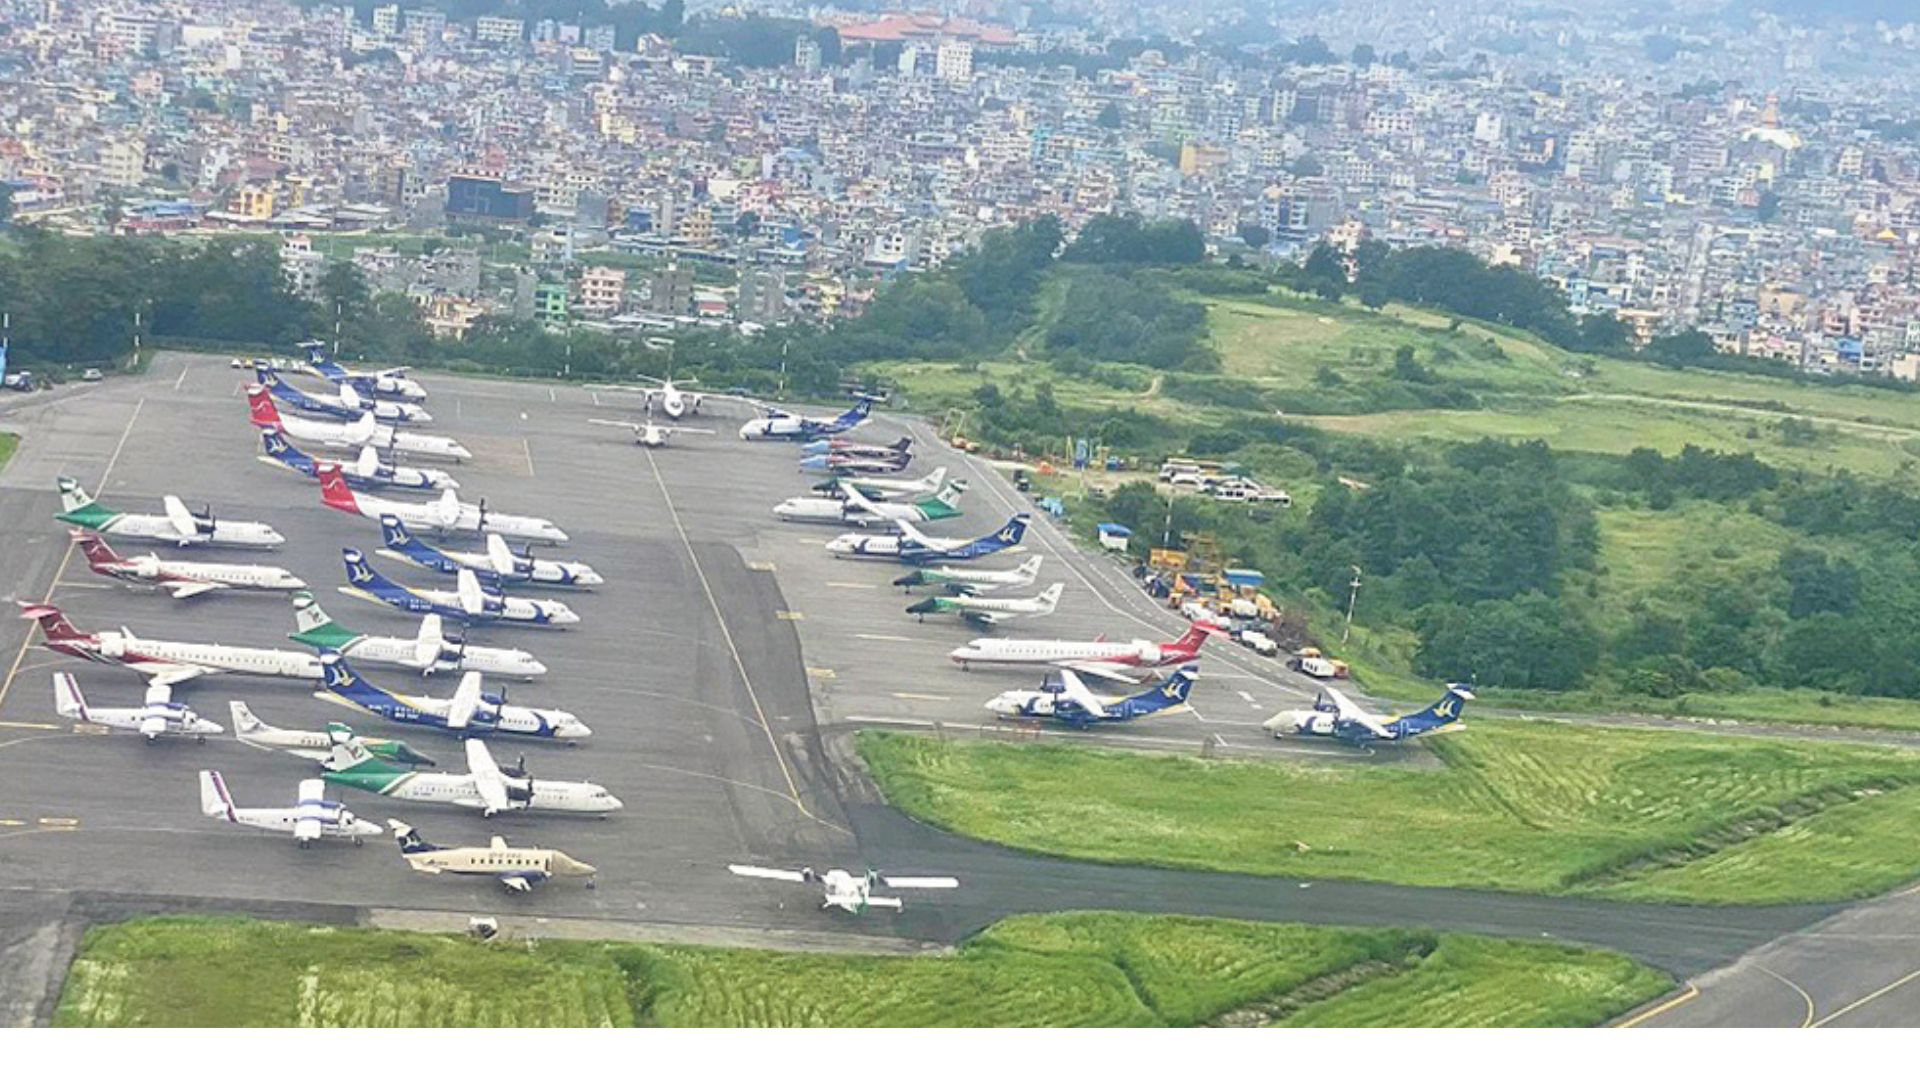 भिजिबिलिटी कम हुँदा काठमाडौं विमानस्थलमा विमान अवतरण गर्न समस्या